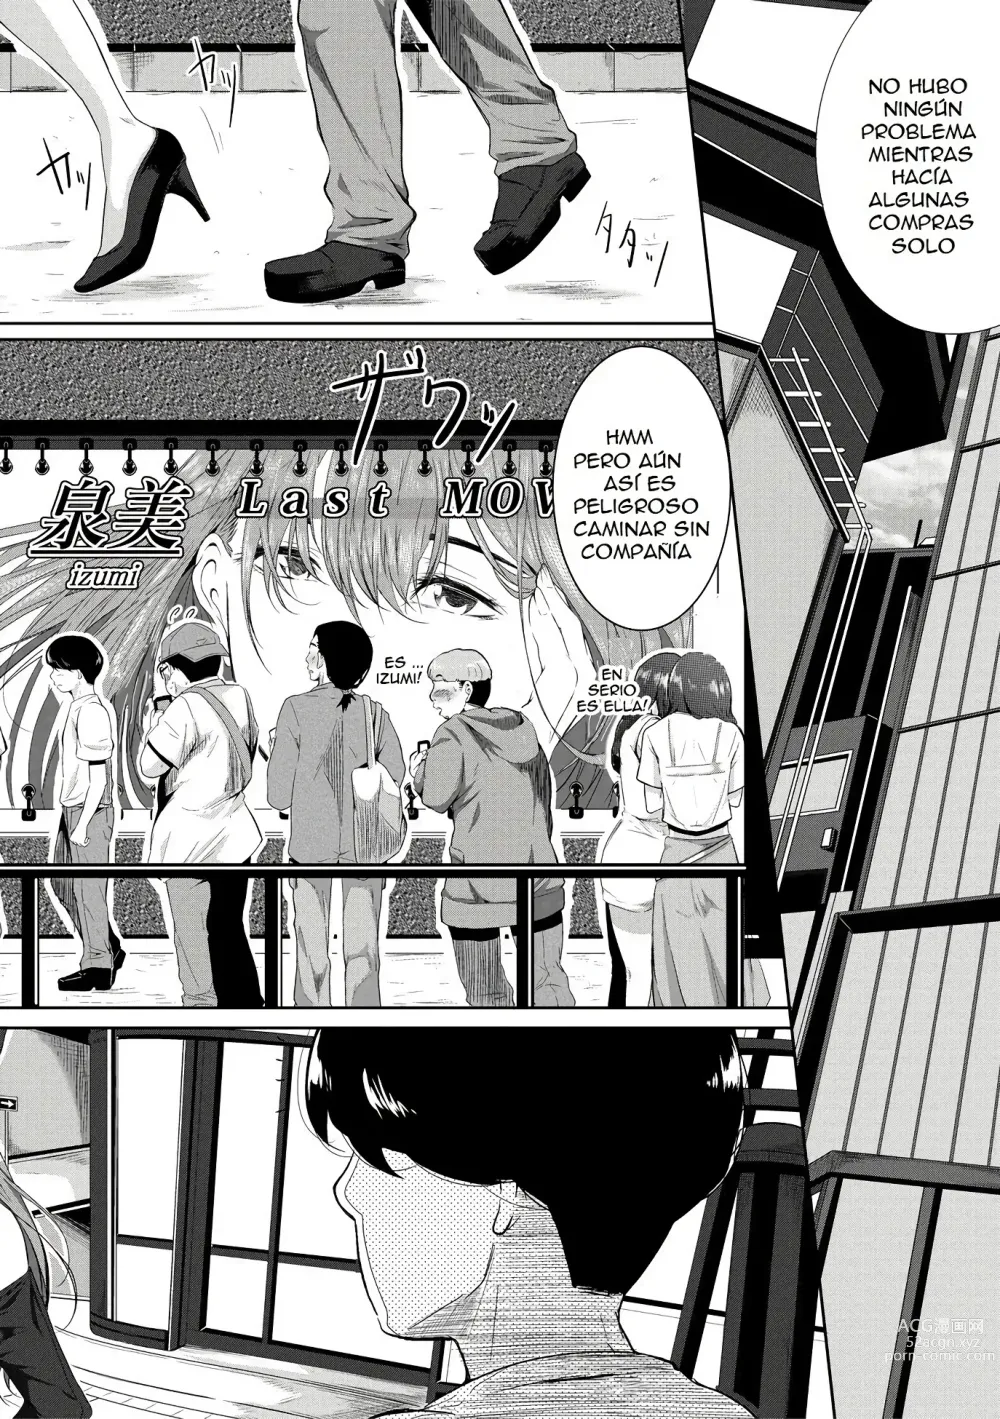 Page 6 of manga Akogare no Oppai wa Ane no Aji